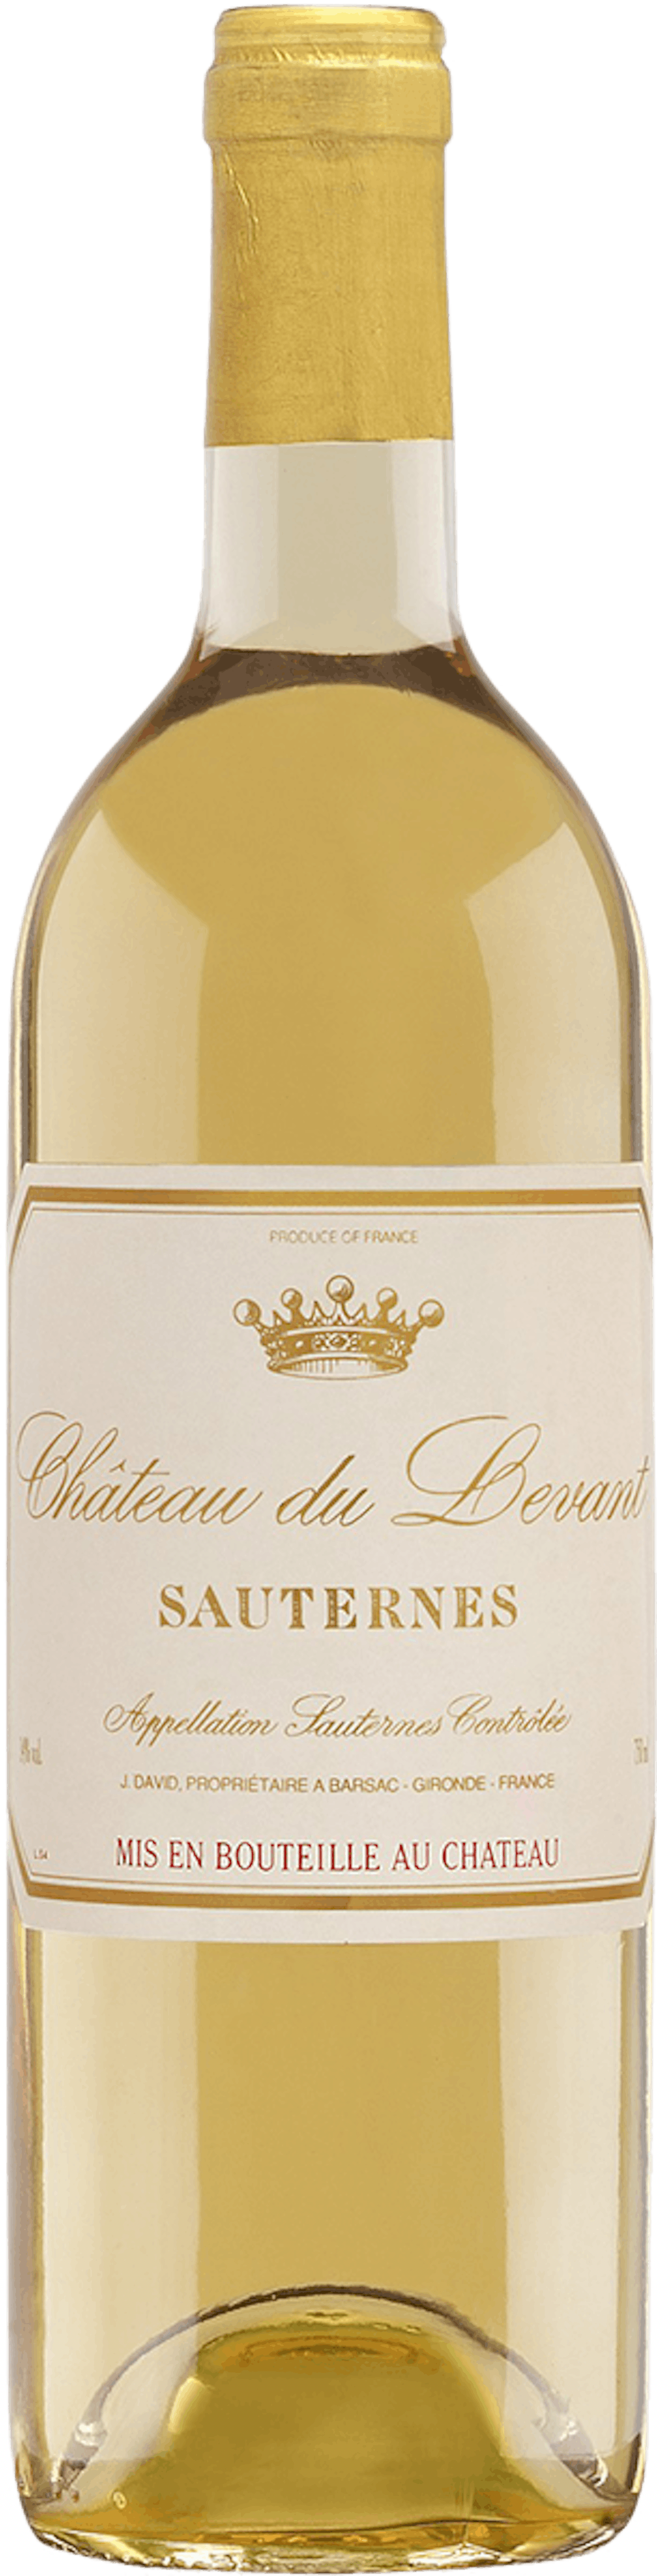 Château du Levant de Château Liot Vin blanc liquoreux